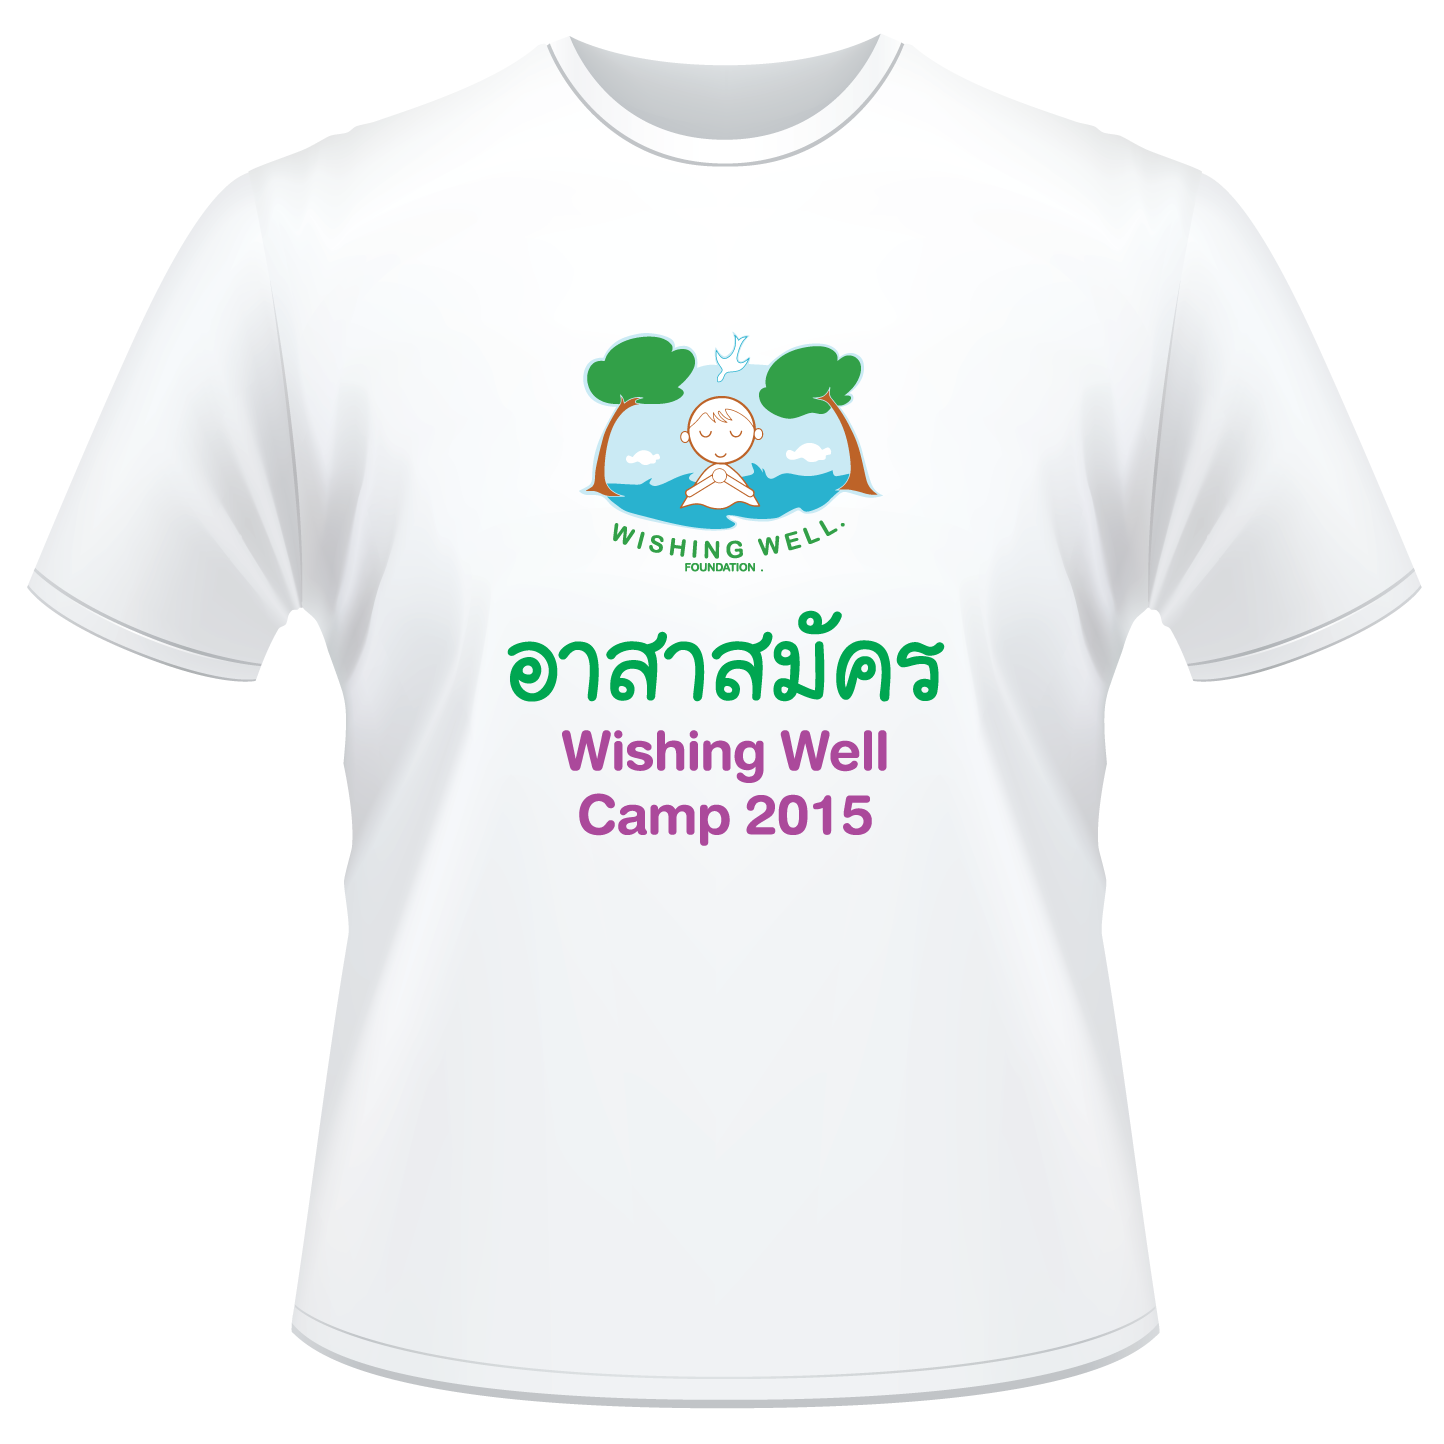 เปิดรับอาสาสมัครเข้าร่วมกิจกรรม Wishing Well Camp 2015